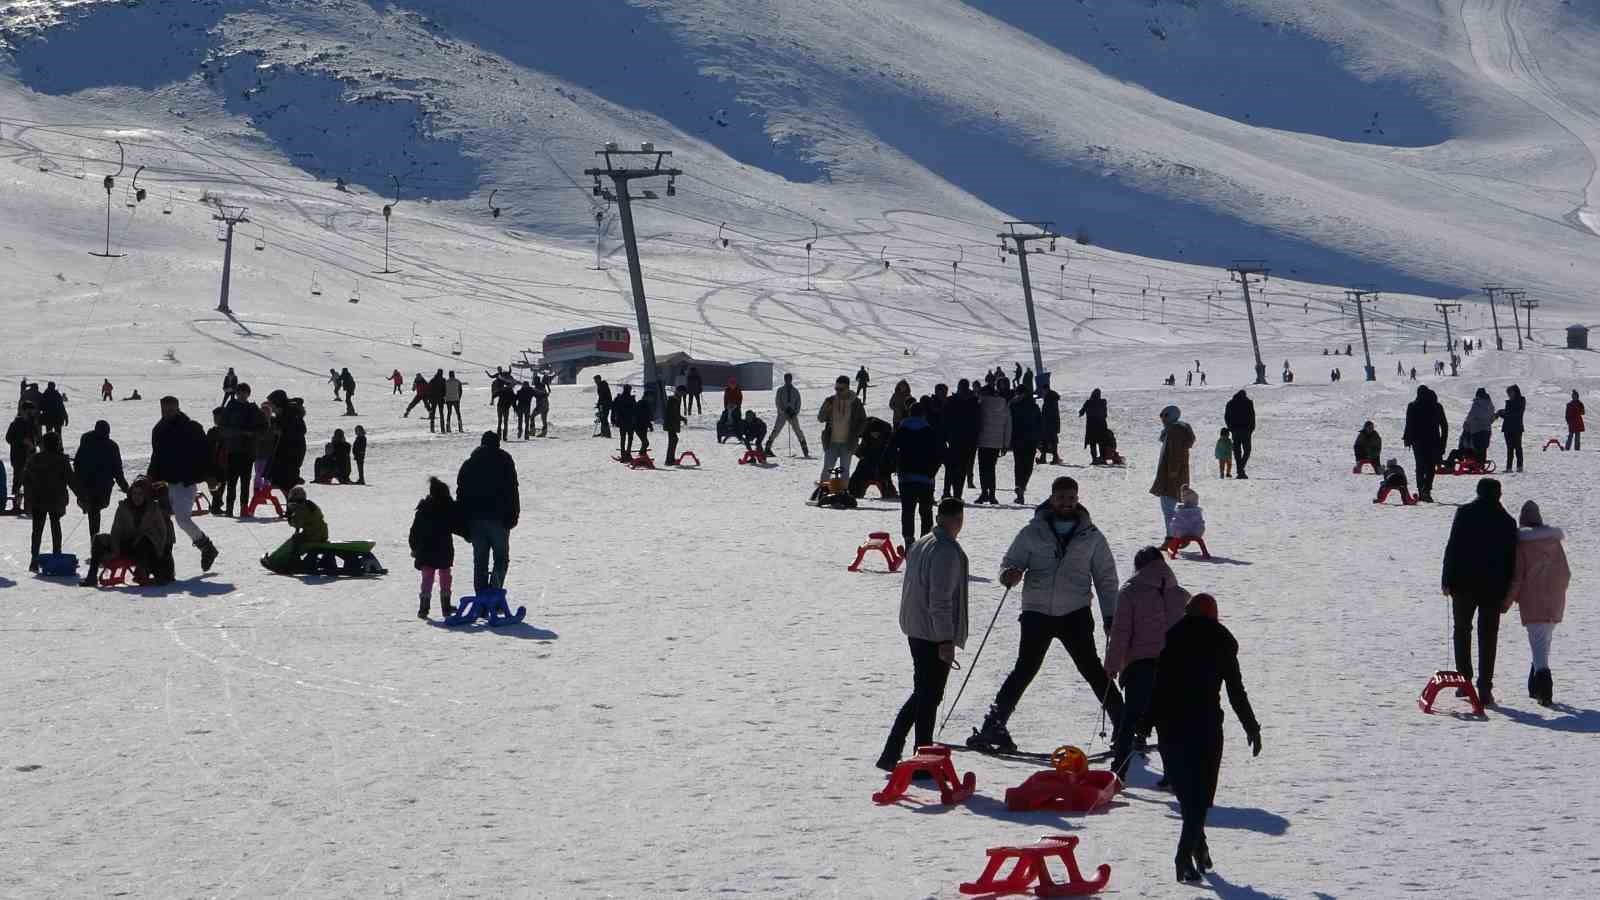 Abalı Kayak Merkezi kayakseverlerin akınına uğradı